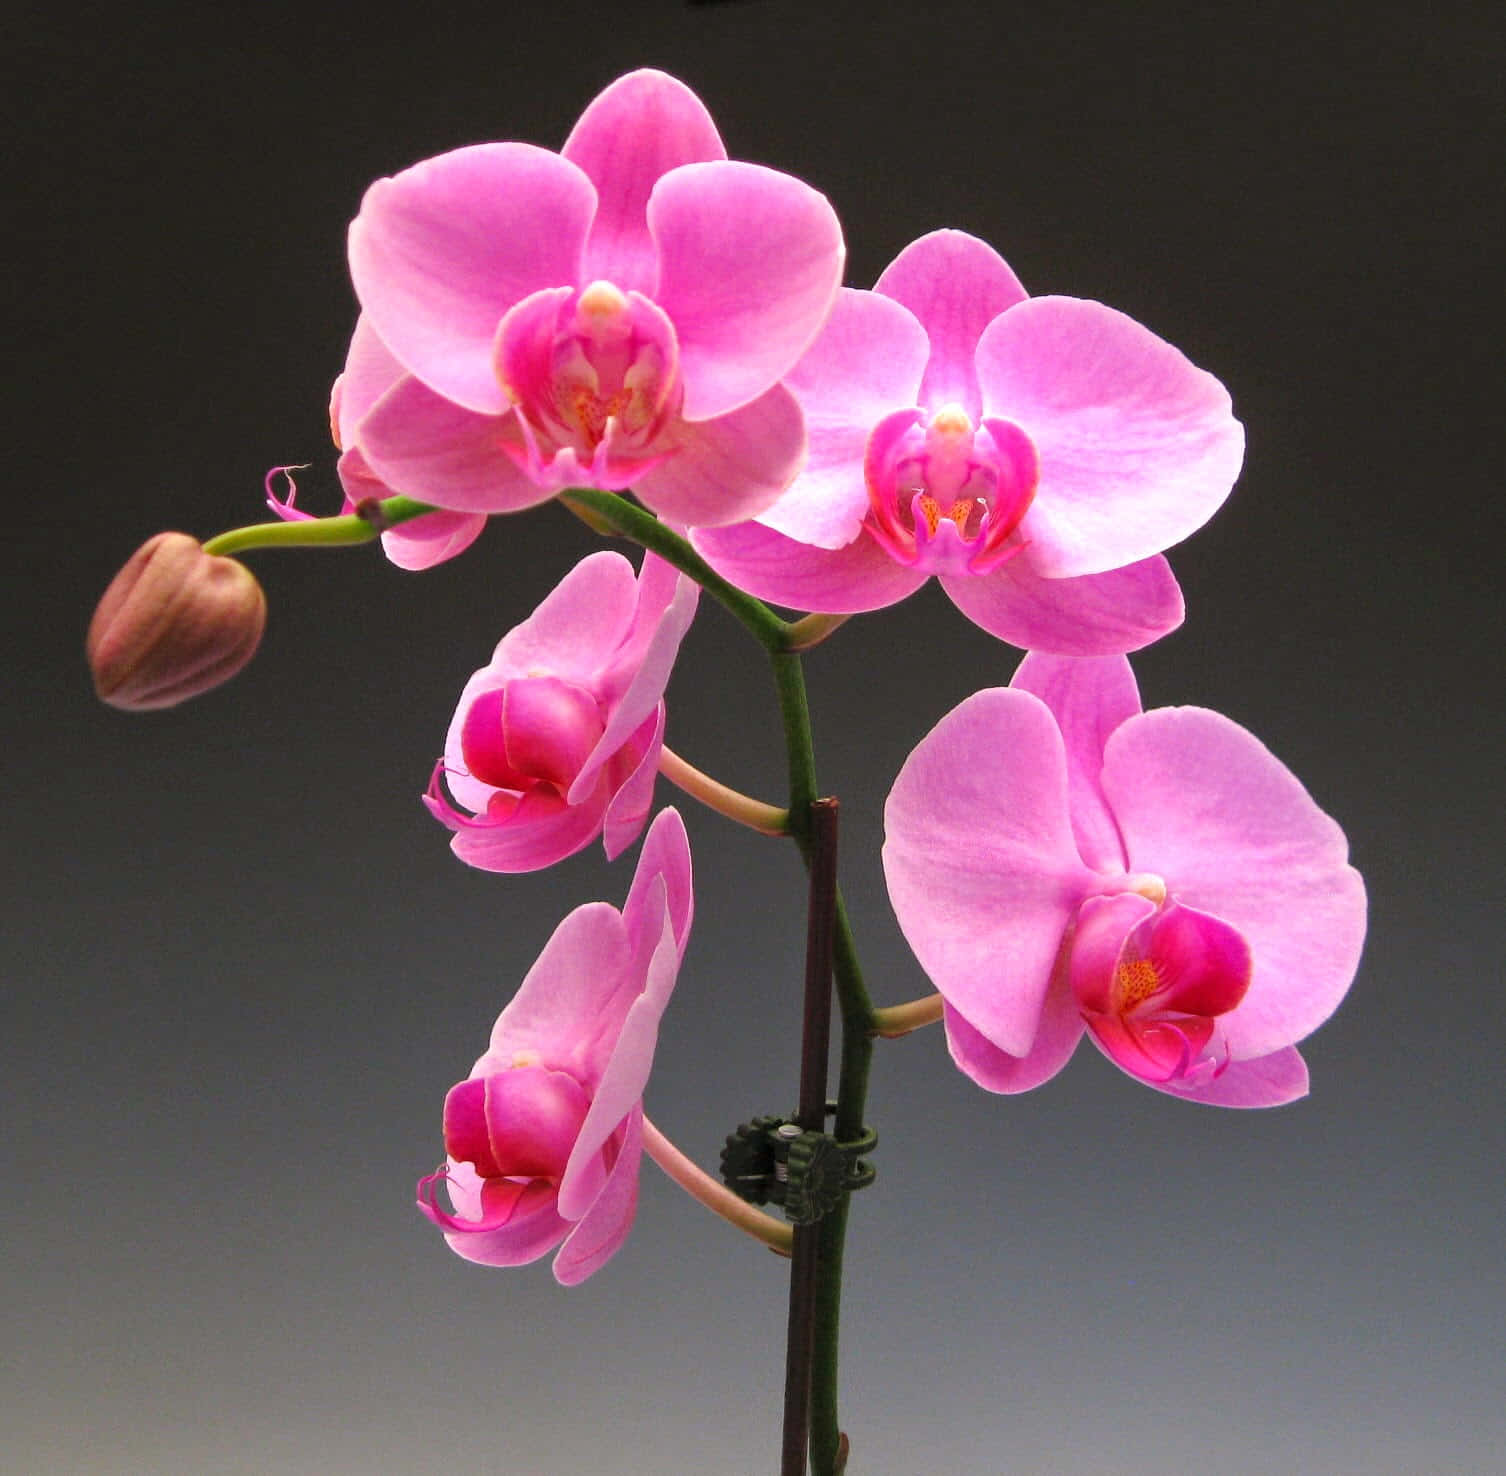 Bellezade La Naturaleza - Una Orquídea En Plena Floración